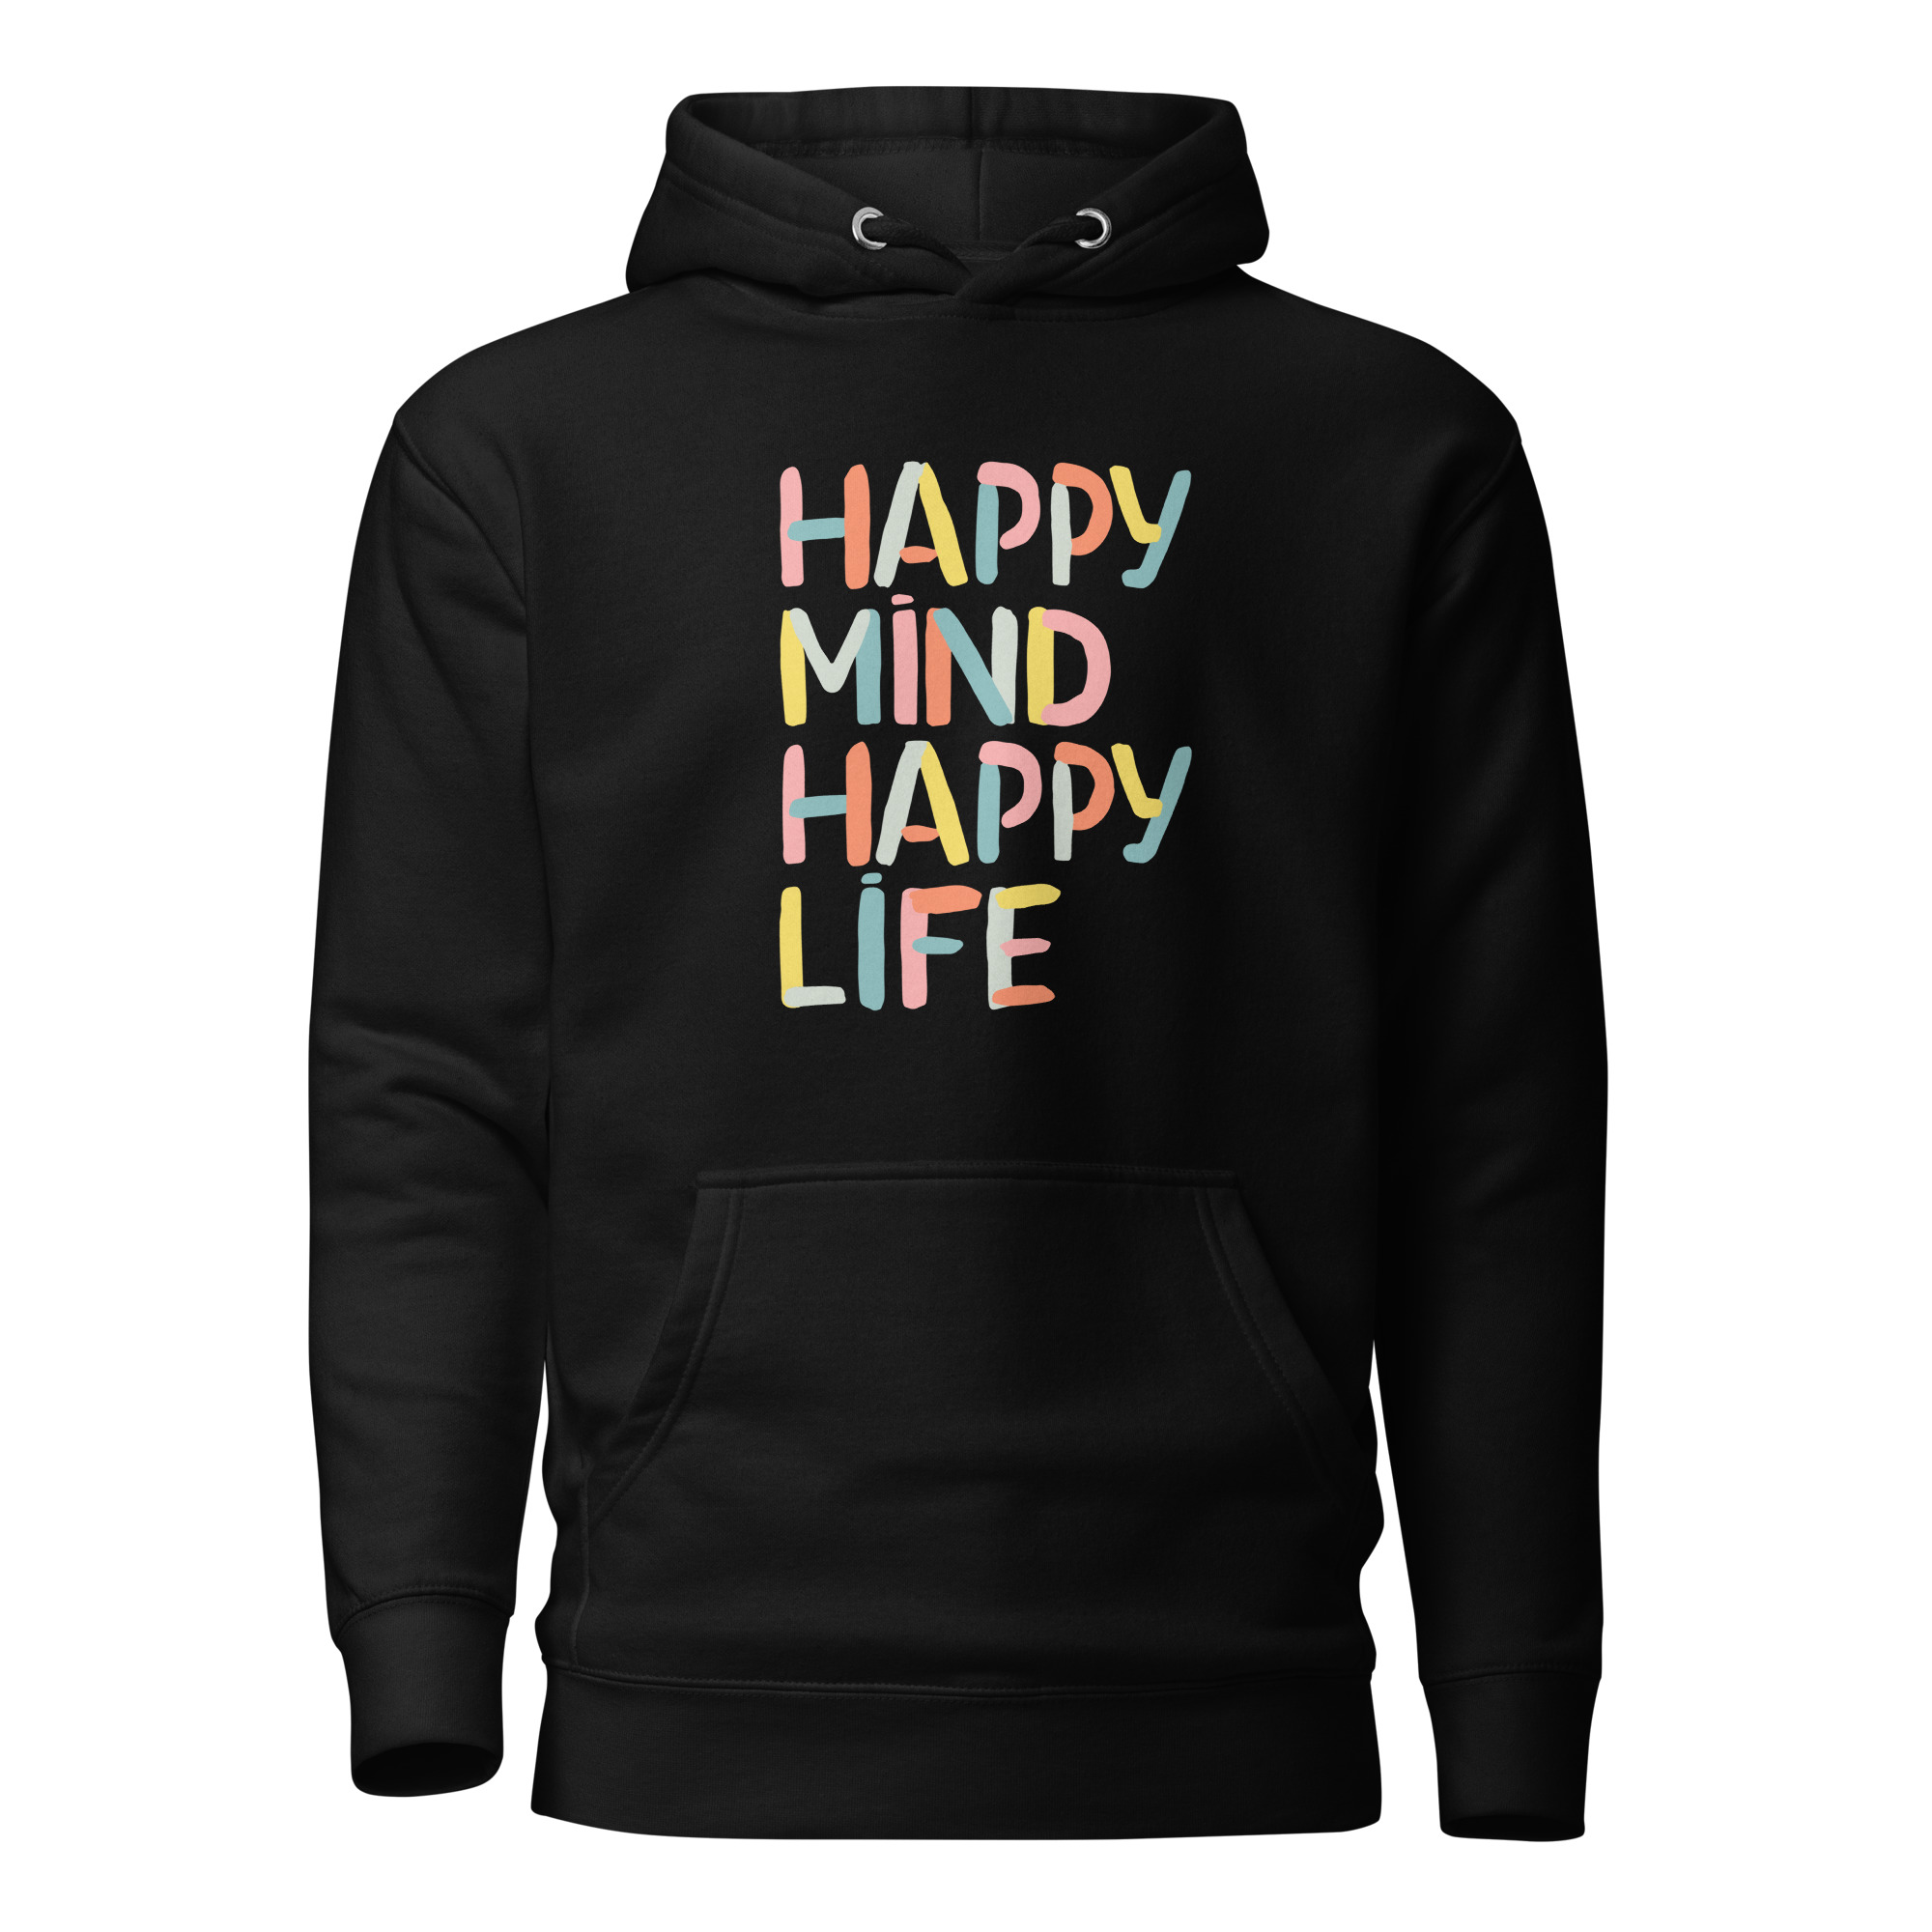 Kuscheliger Hoodie “Happy mind happy life”